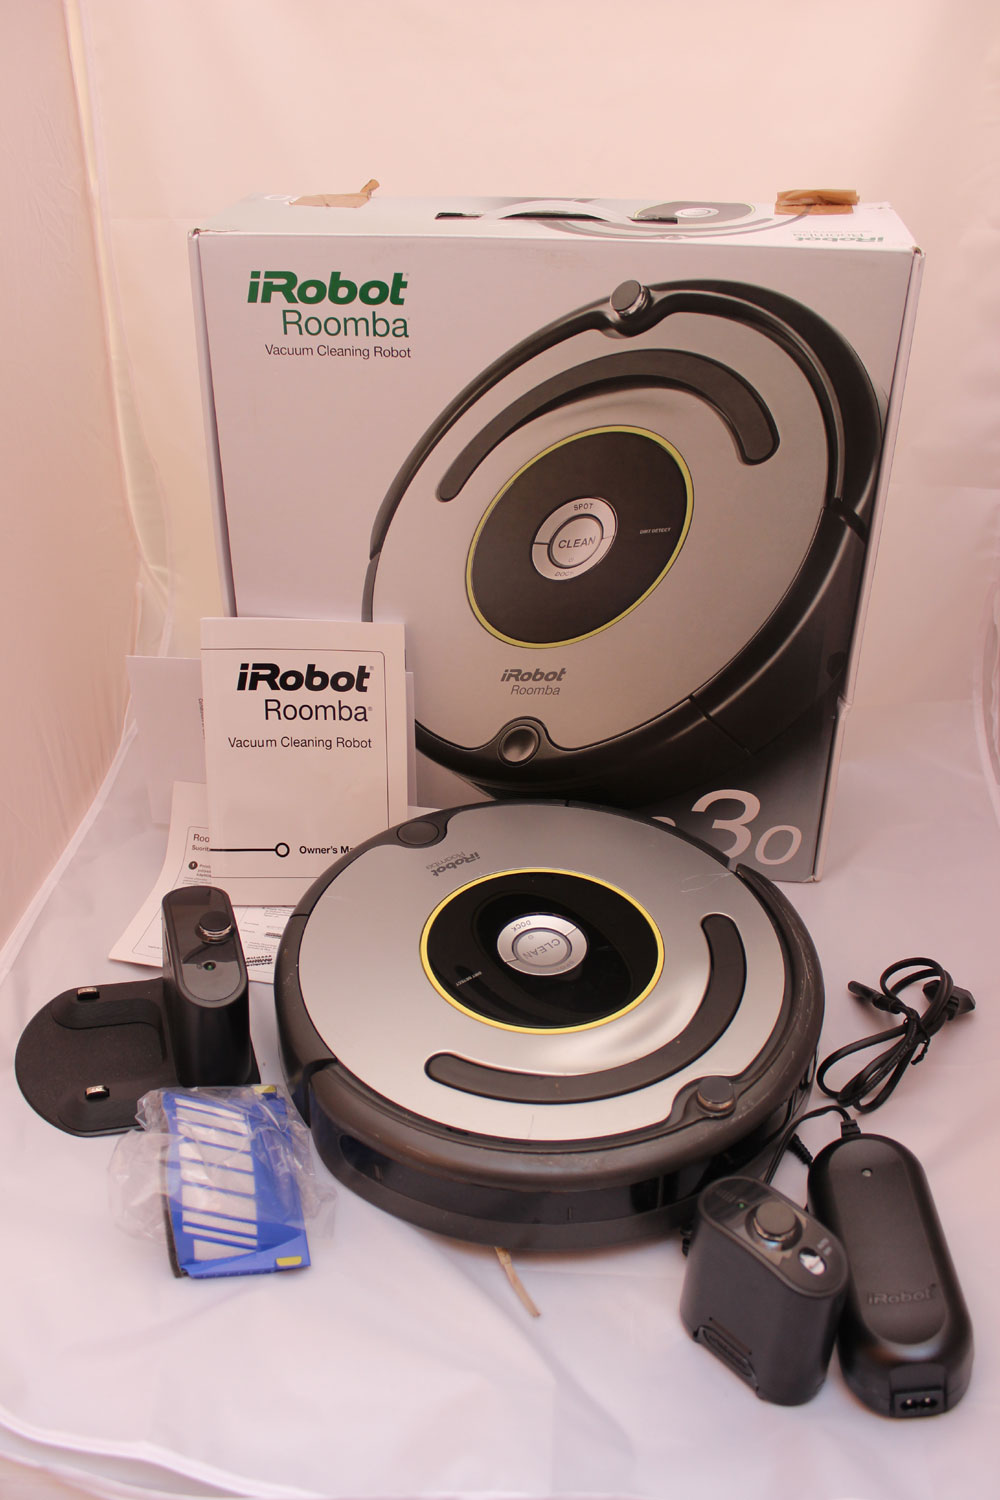 Lieferumfang des iRobot Roomba 630 (© eTest.de)